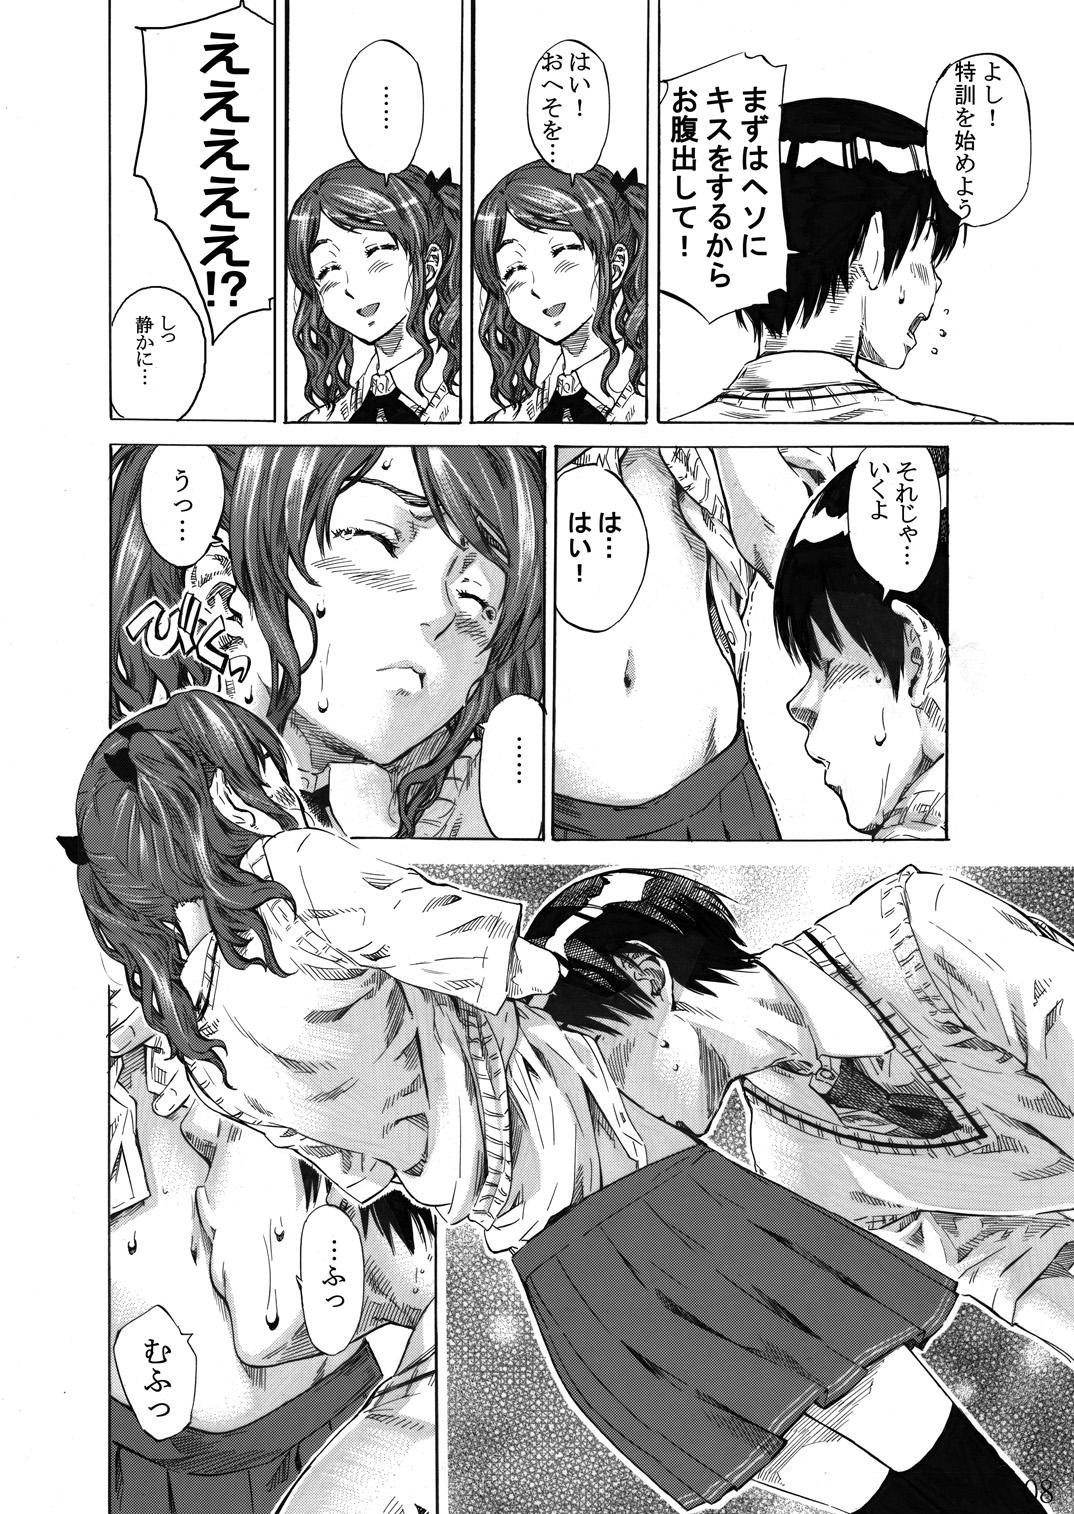 Transex Nakata-san ga Fukafuka sugite Ikiru no ga Tsurai orz - Amagami Gaybukkake - Page 7